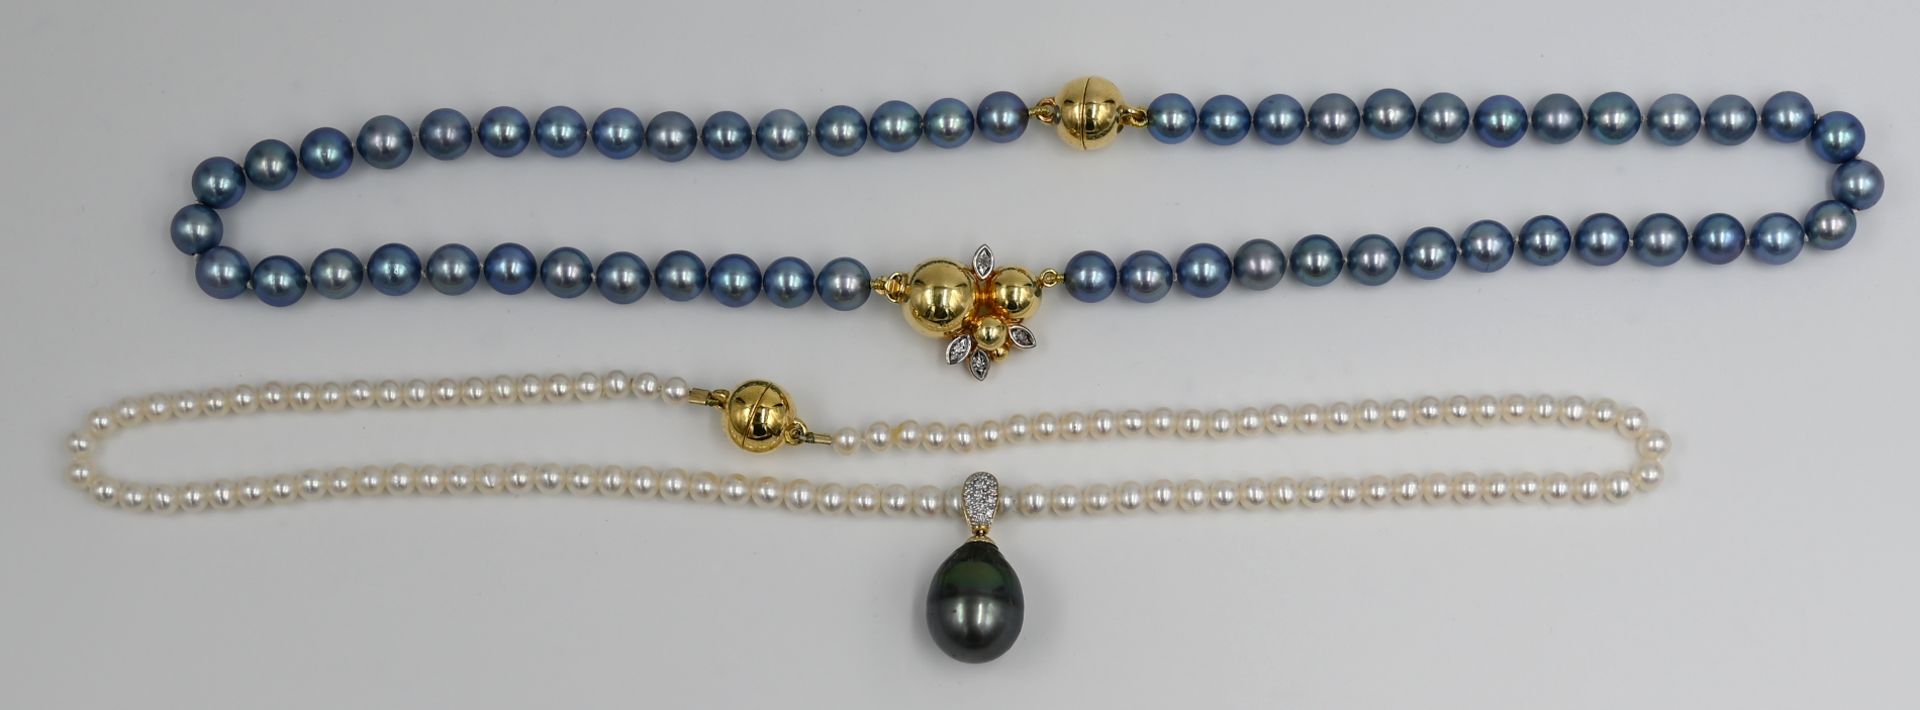 2 Perlenketten je mit 1 Magnetverschluss Silber vergoldet, sowie 1 Verschluss GG/ WG 14ct. mit Brill